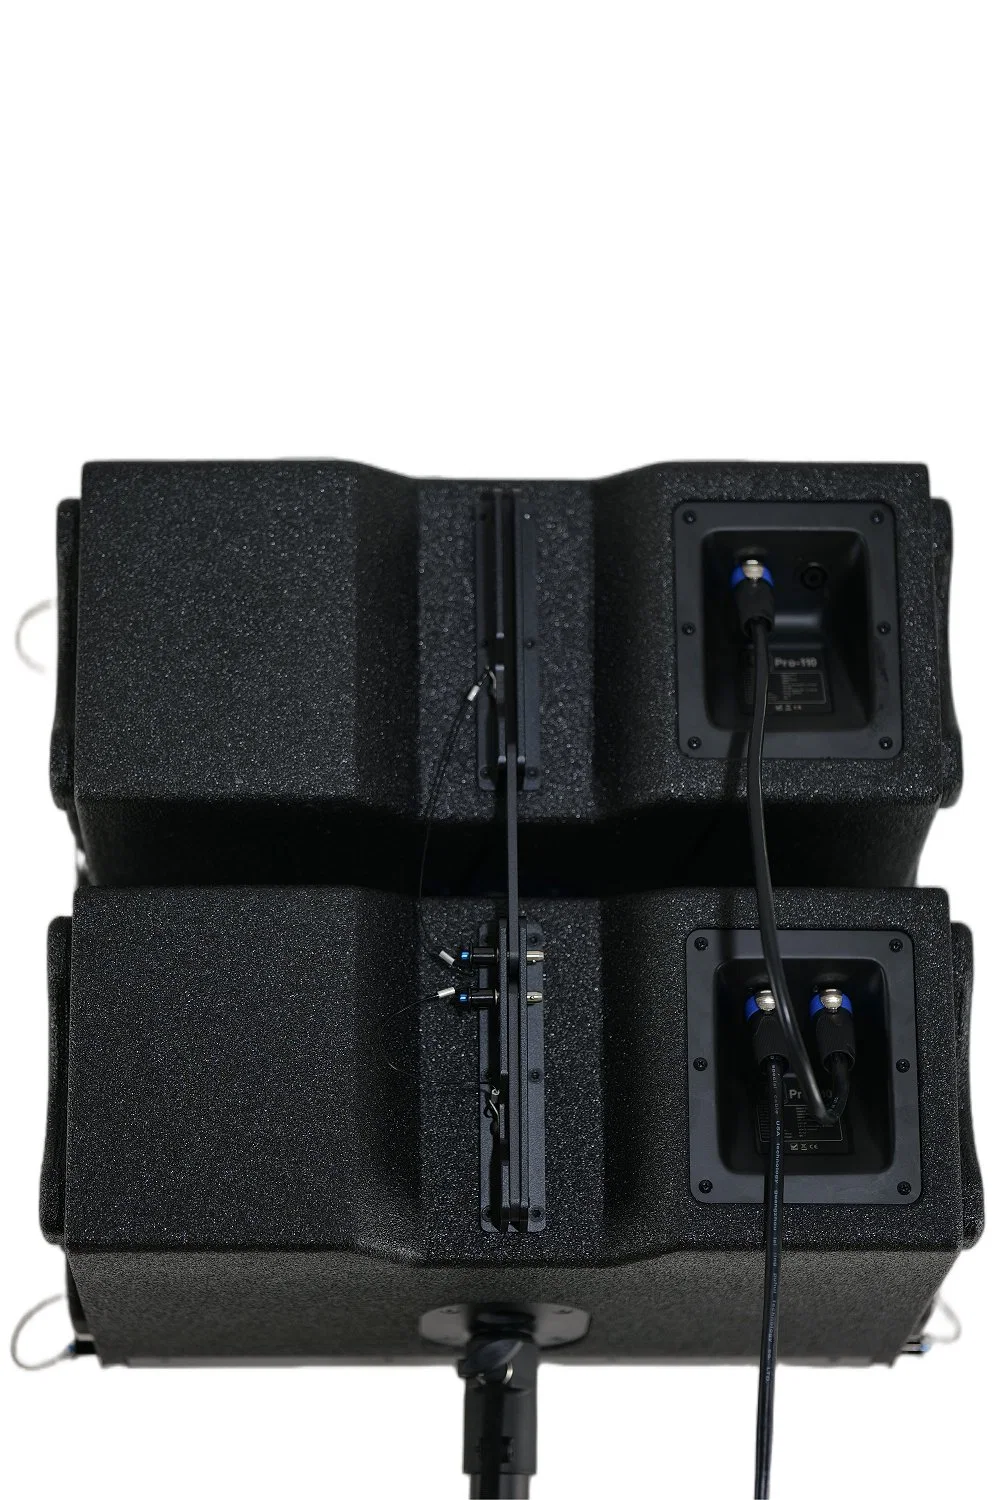 Mini-système audio étanche T. I PRO Audio de 10 pouces